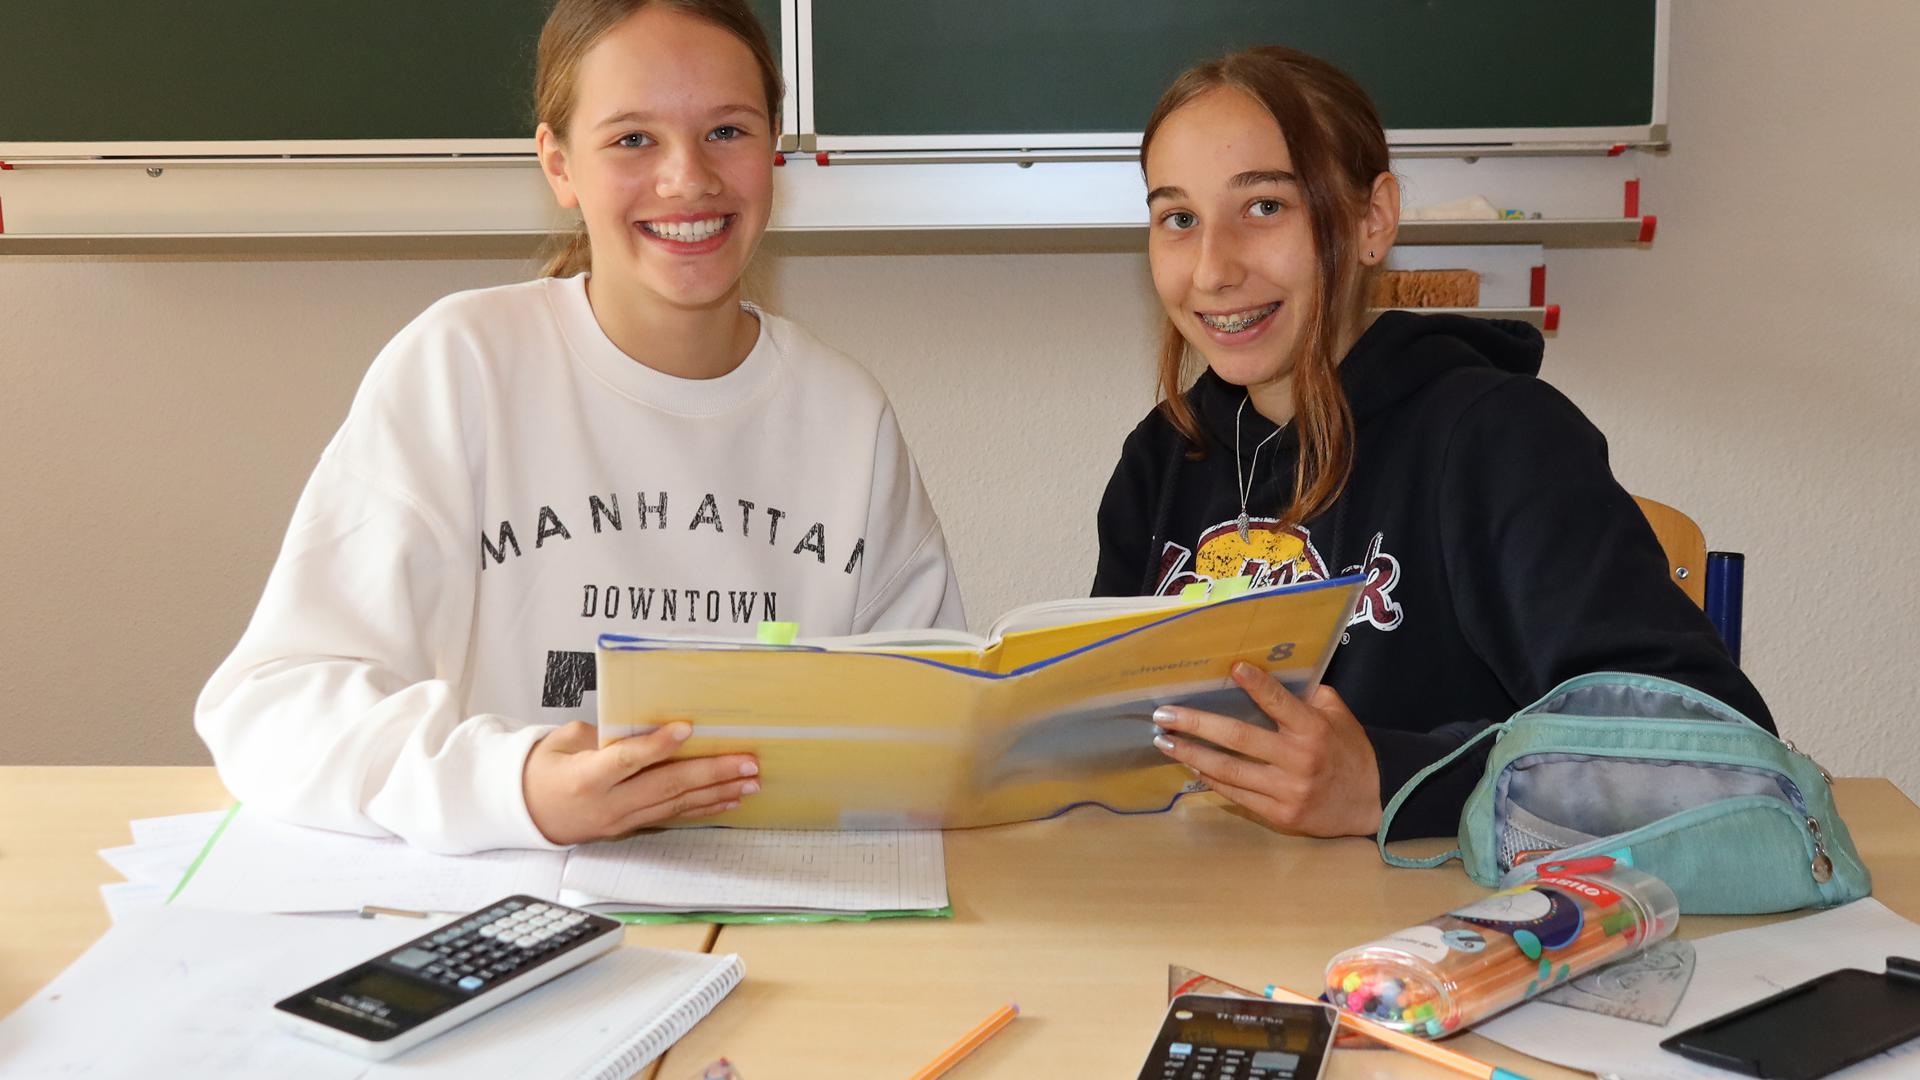 Die Sommerschule der Heimschule Lender in Sasbach ist gestartet. Weshalb tun sich Schüler das freiwillig an und opfern die Ferien?